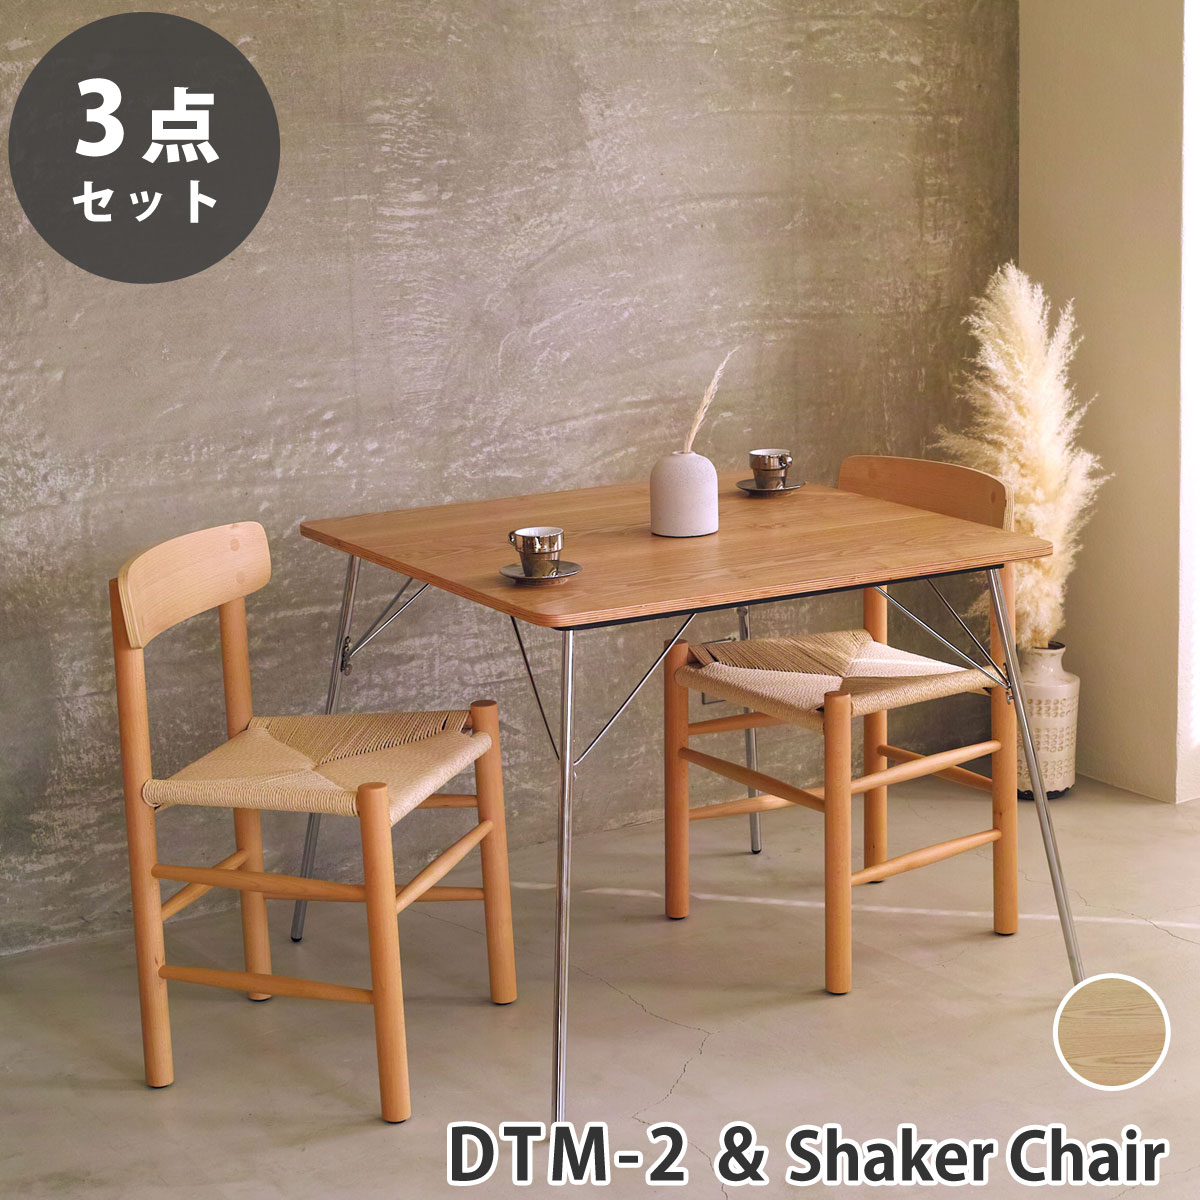 【新品】Eames TABLE 3set ダイニングテーブル